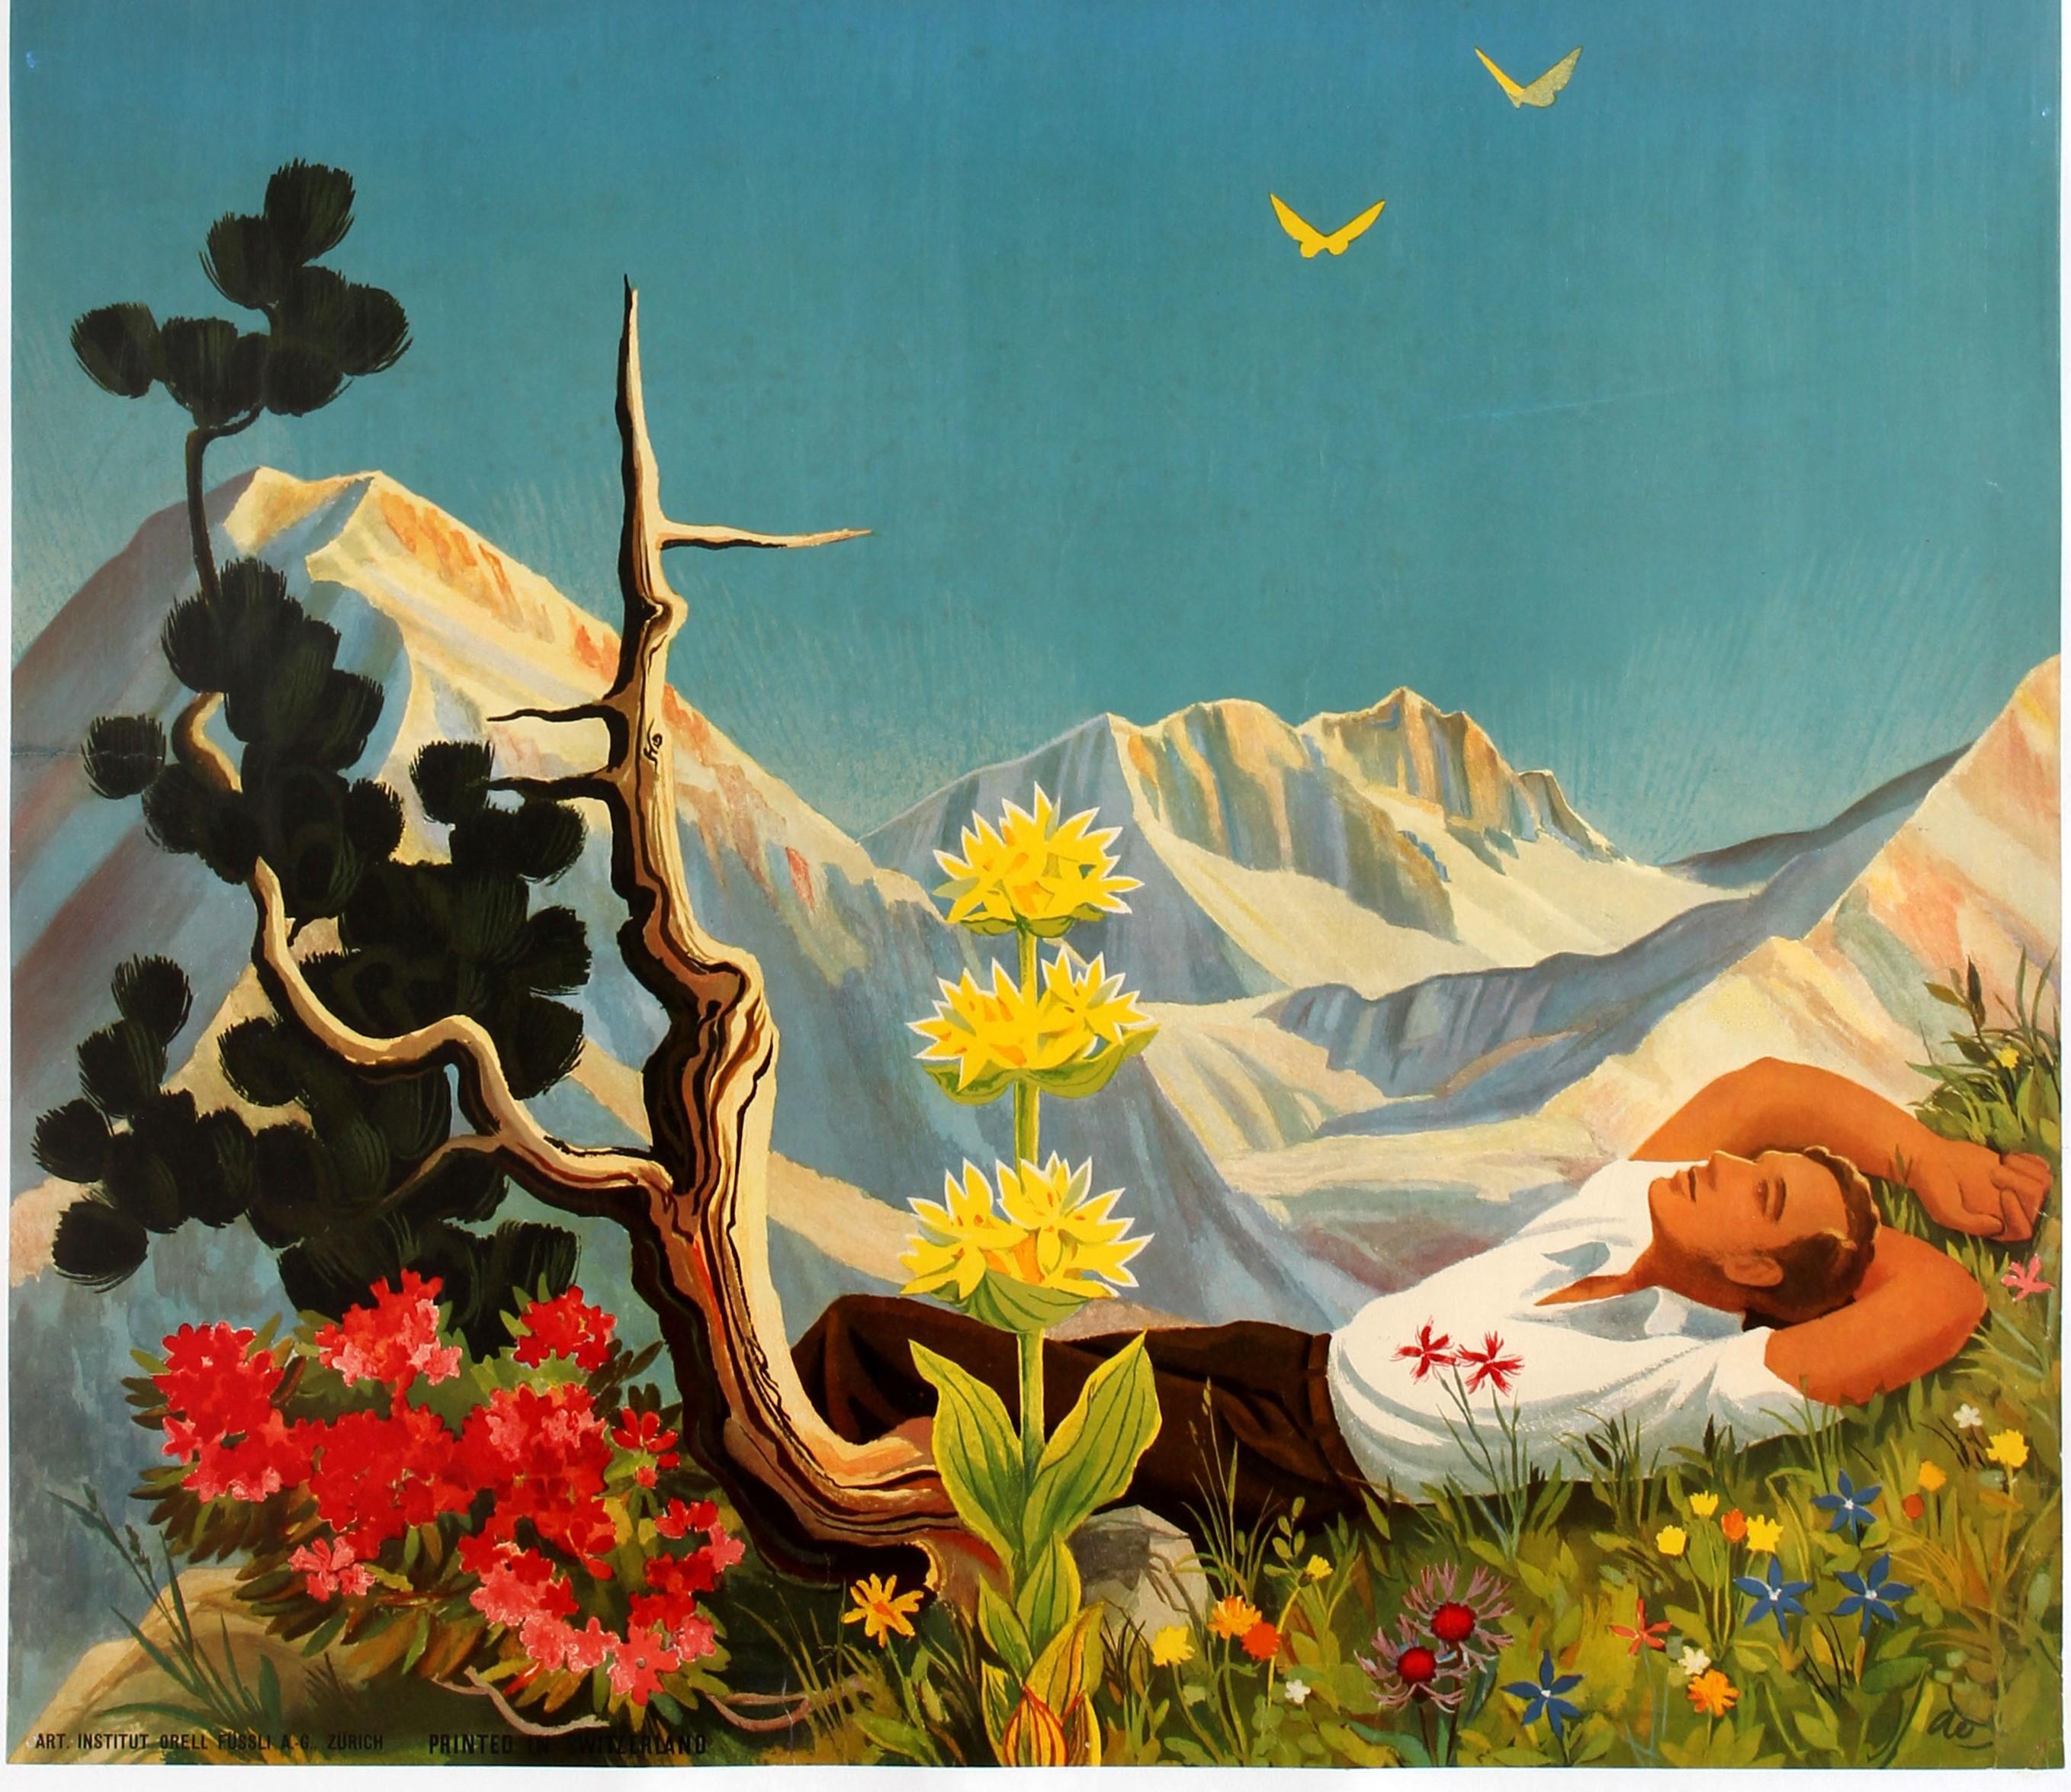 Original Vintage-Reiseplakat für Arosa in den Schweizer Alpen mit einem farbenfrohen Kunstwerk von Hans Aeschbach (1911-1999), das einen Wanderer im Gras liegend unter einem strahlend blauen Himmel mit einem Baum und Blumen im Vordergrund, zwei